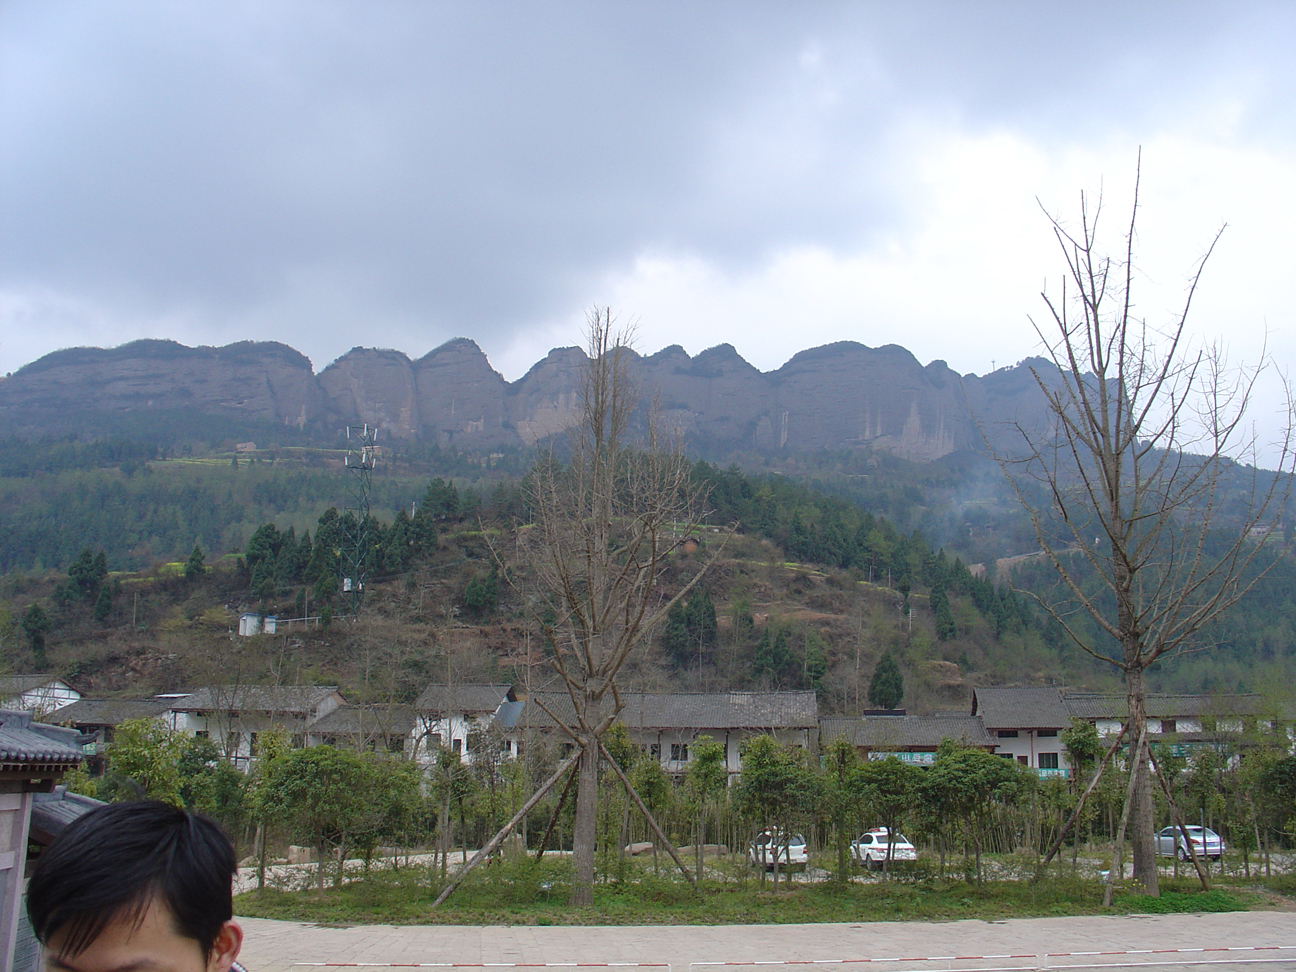 The mountains of Jianmenguan